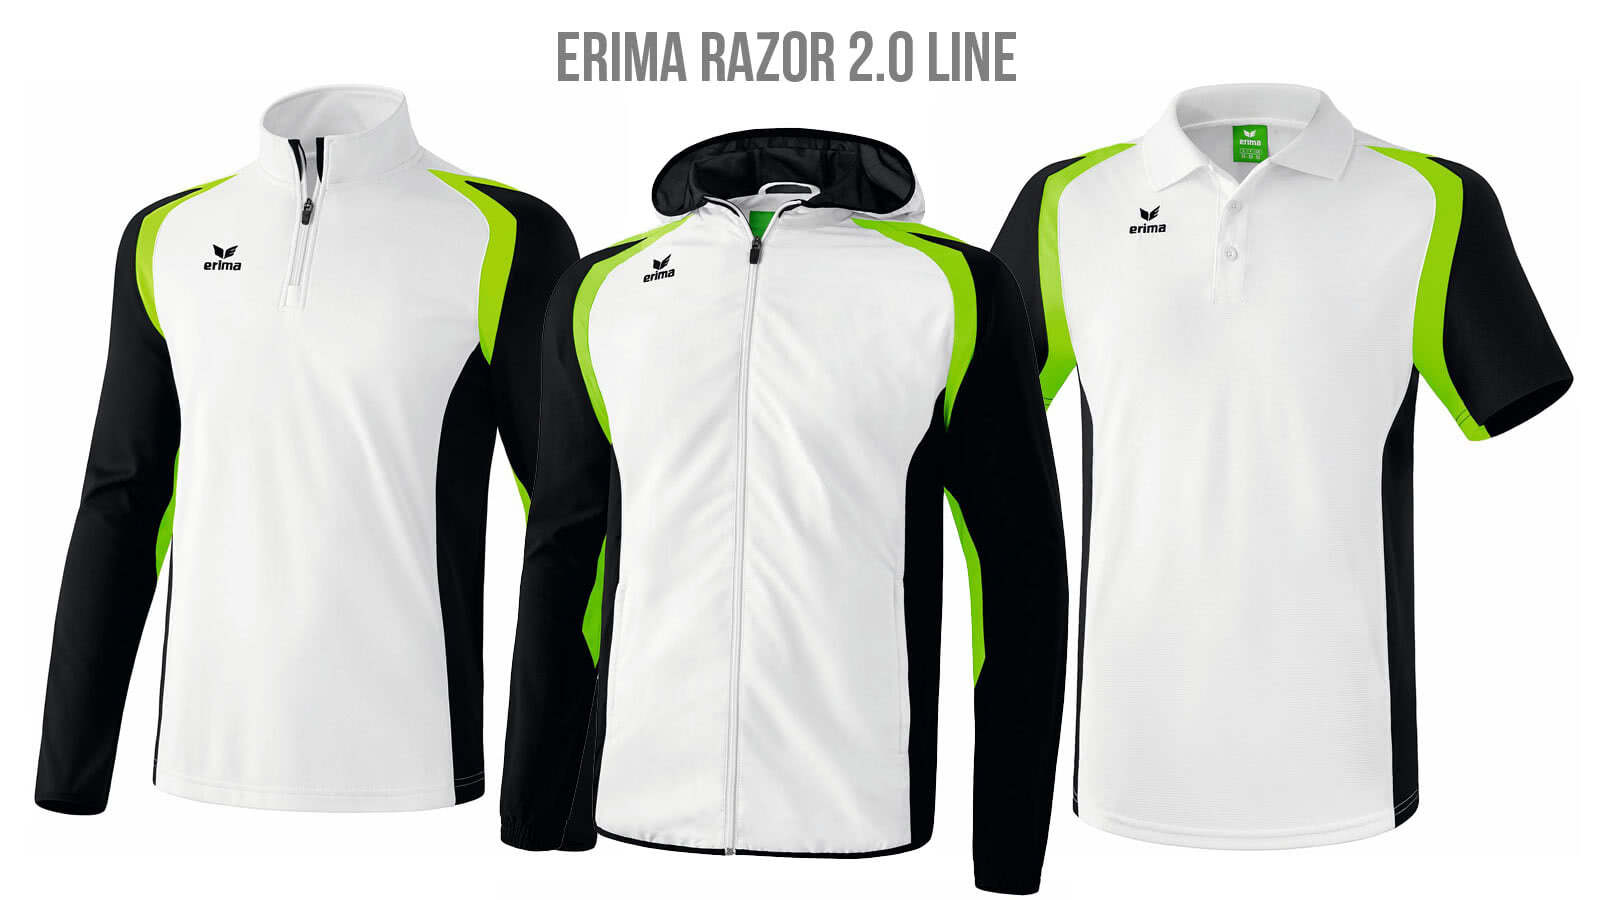 Die Erima Razor 2.0 Teamline für Fußball, Handball, Volleyball und weitere Sportarten